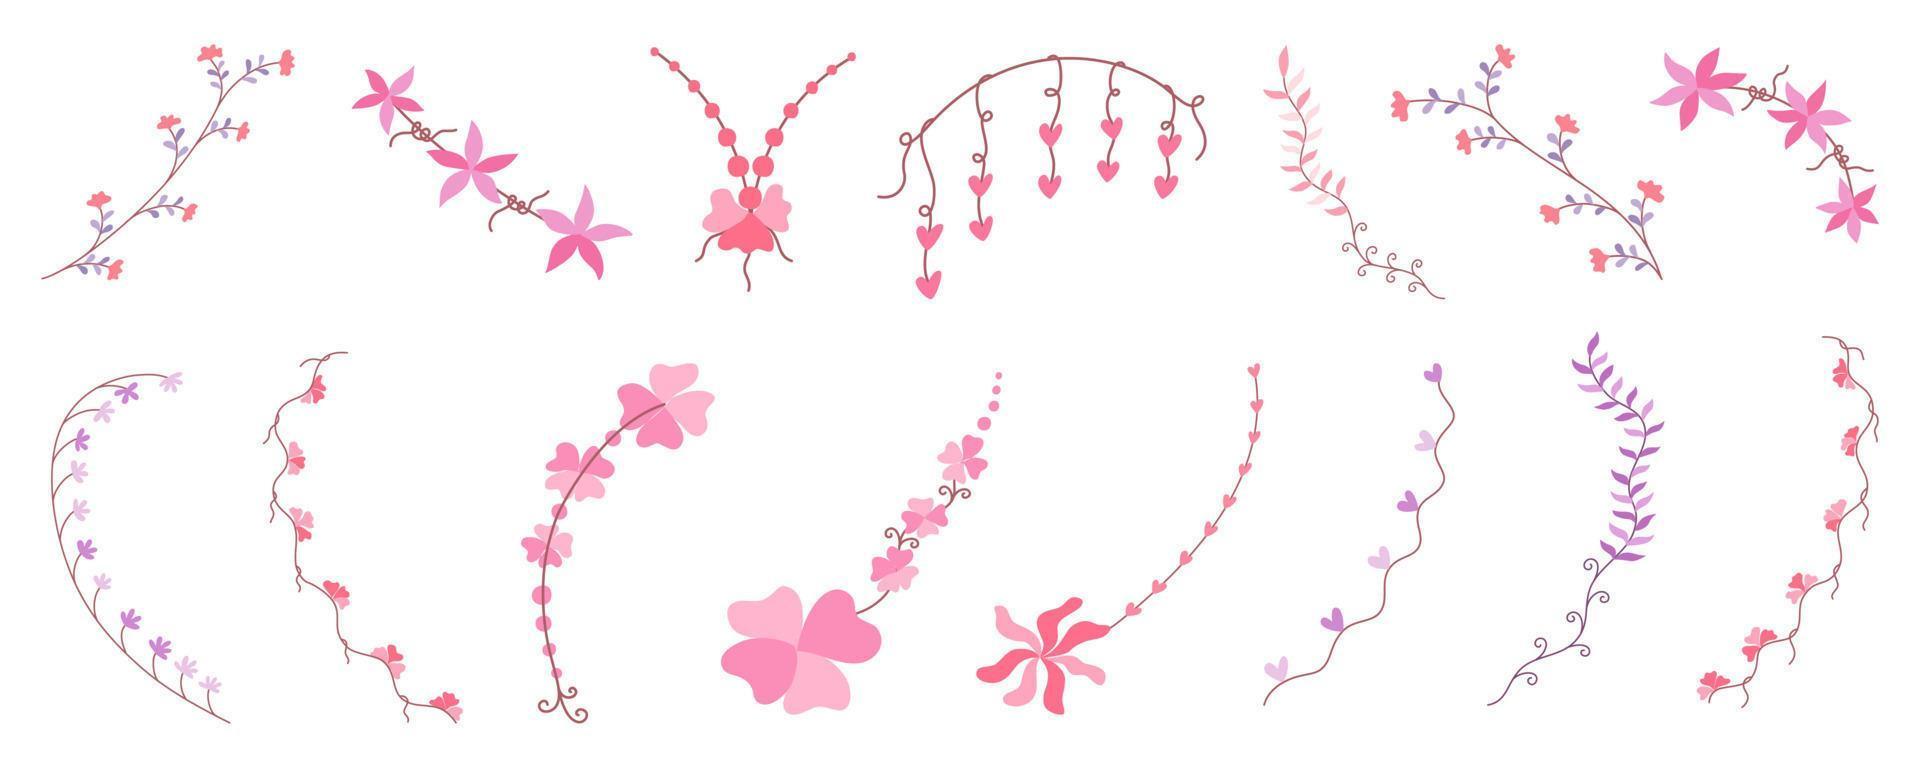 Set von Blumenelementen im Doodle-Stil auf weißem Hintergrund für Kartendekoration, Hochzeit, Sammelalbum, Papierdekoration, Digitaldruck und mehr. vektor